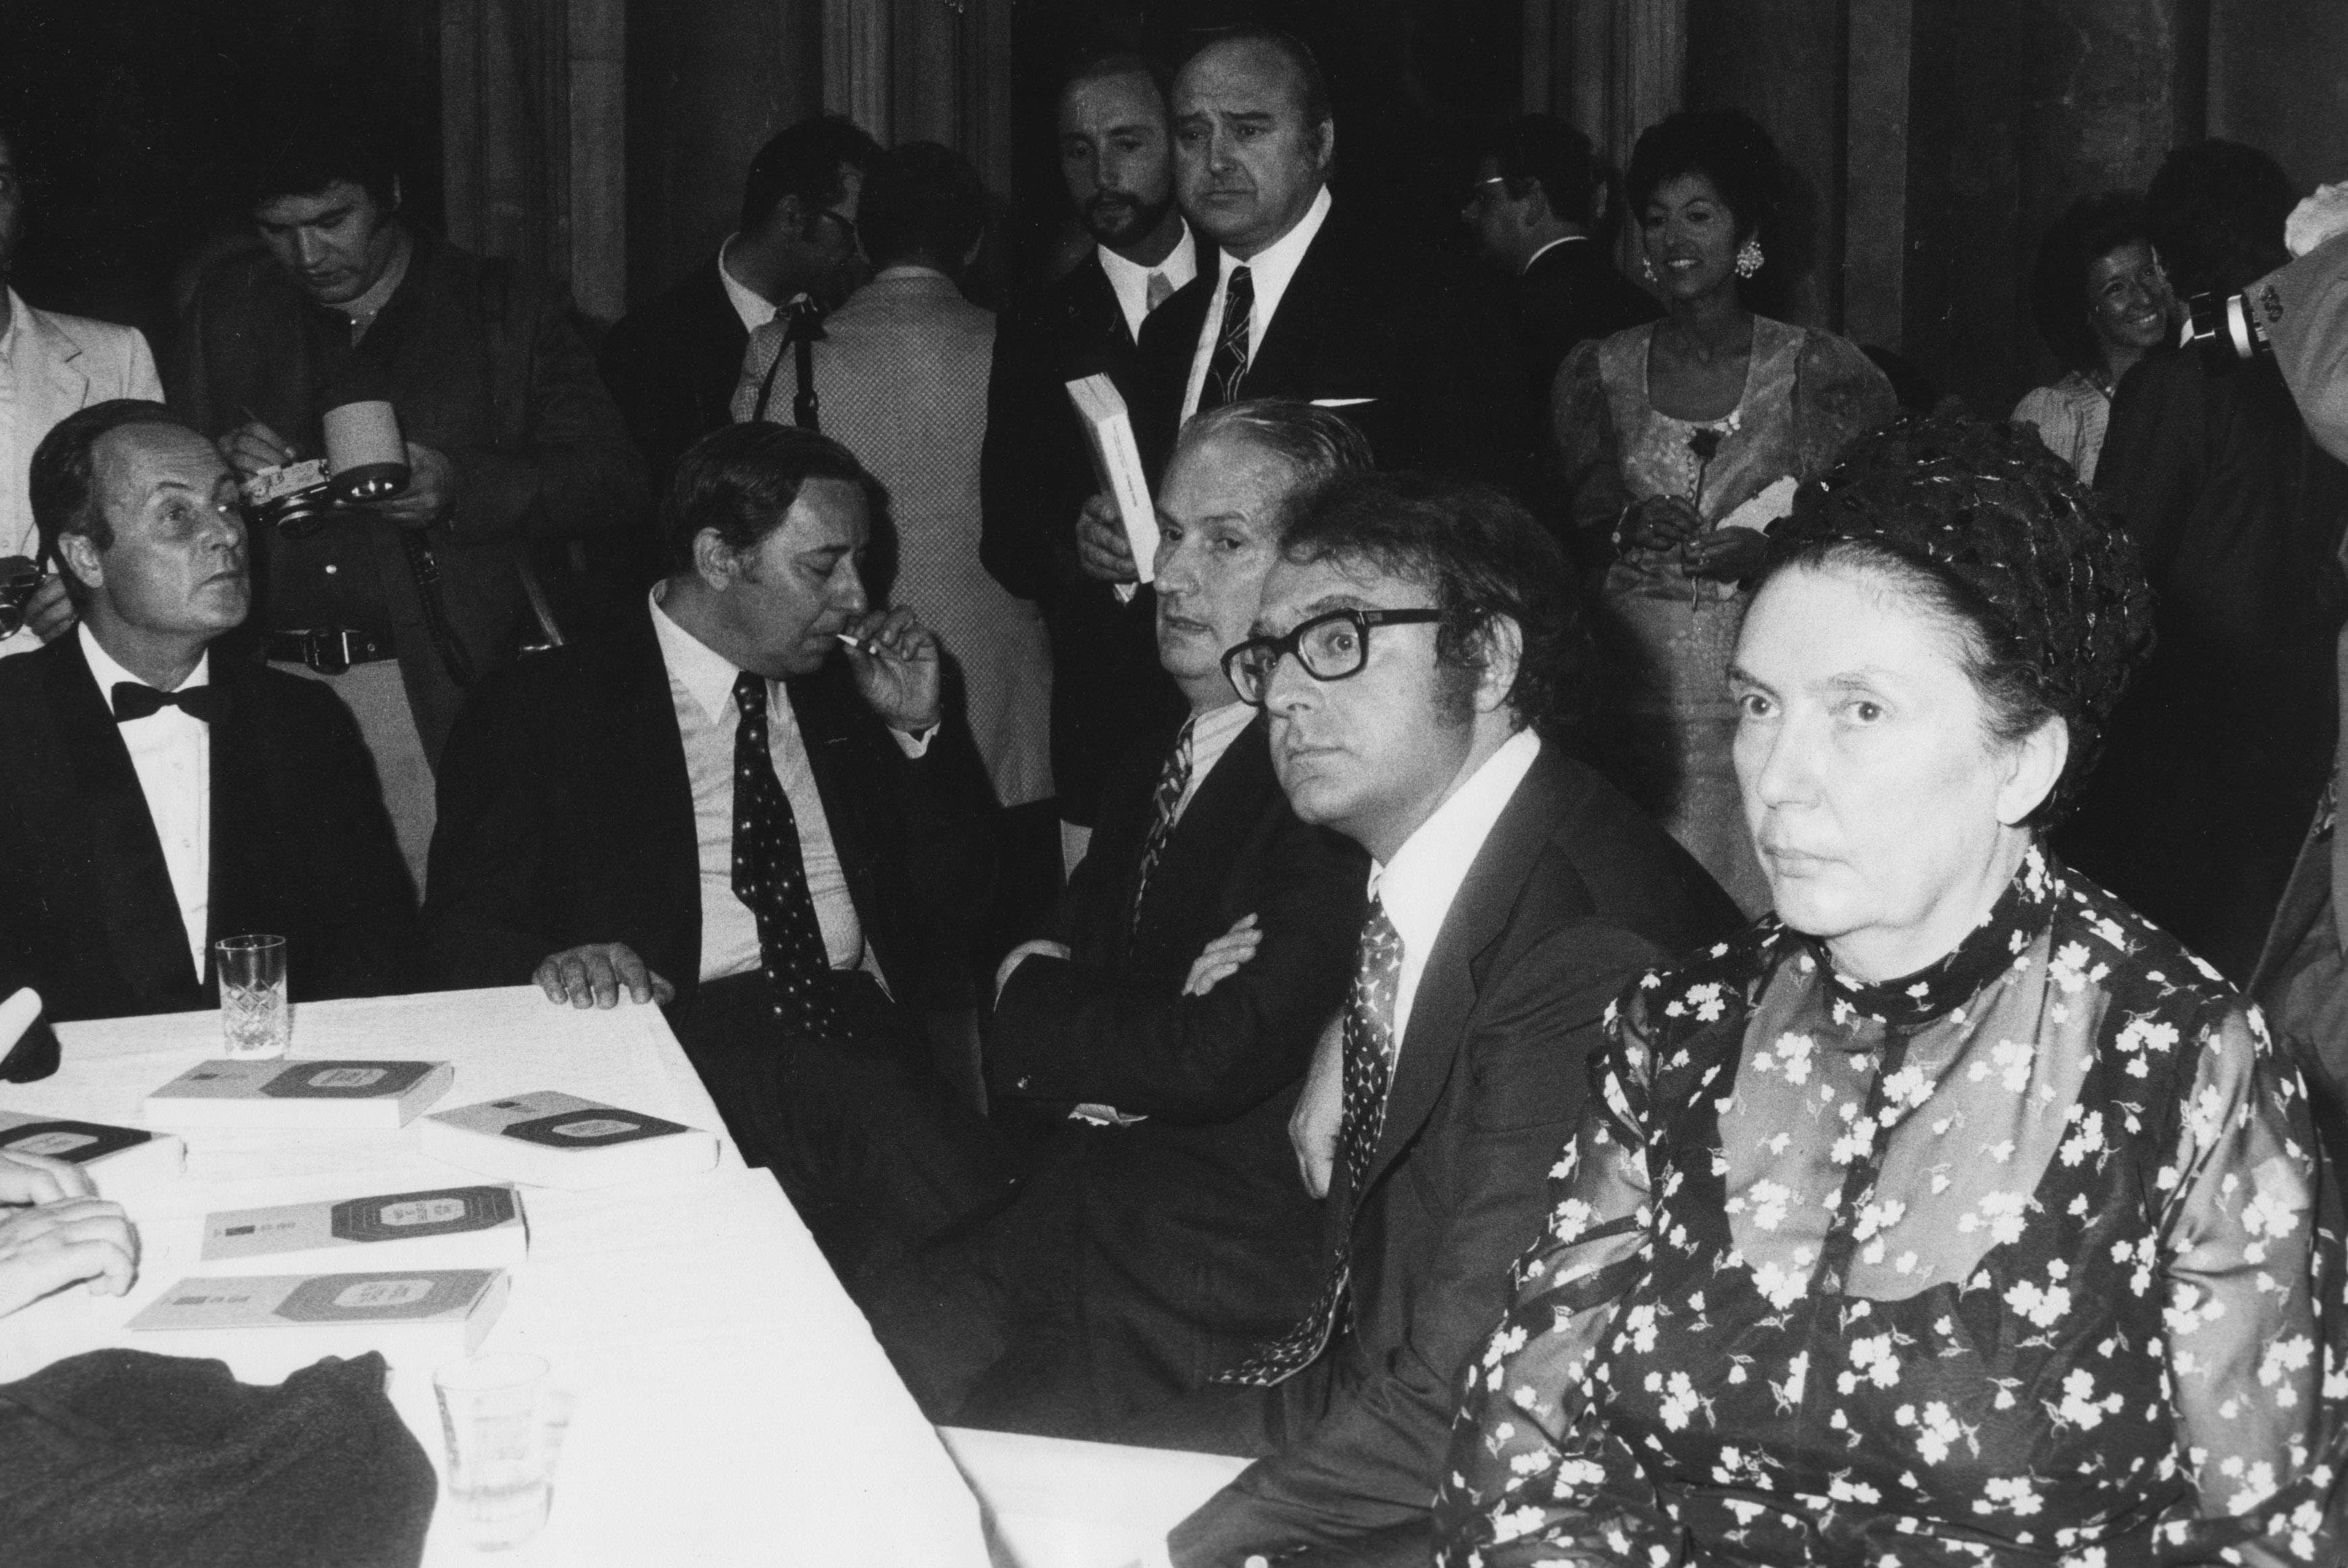 Giorgio Bassani, Michele Prisco, Carlo Cassola, Luciano Luisi, Alberto Bevilacqua e Lalla Romano, cerimonia Premio Strega 1971